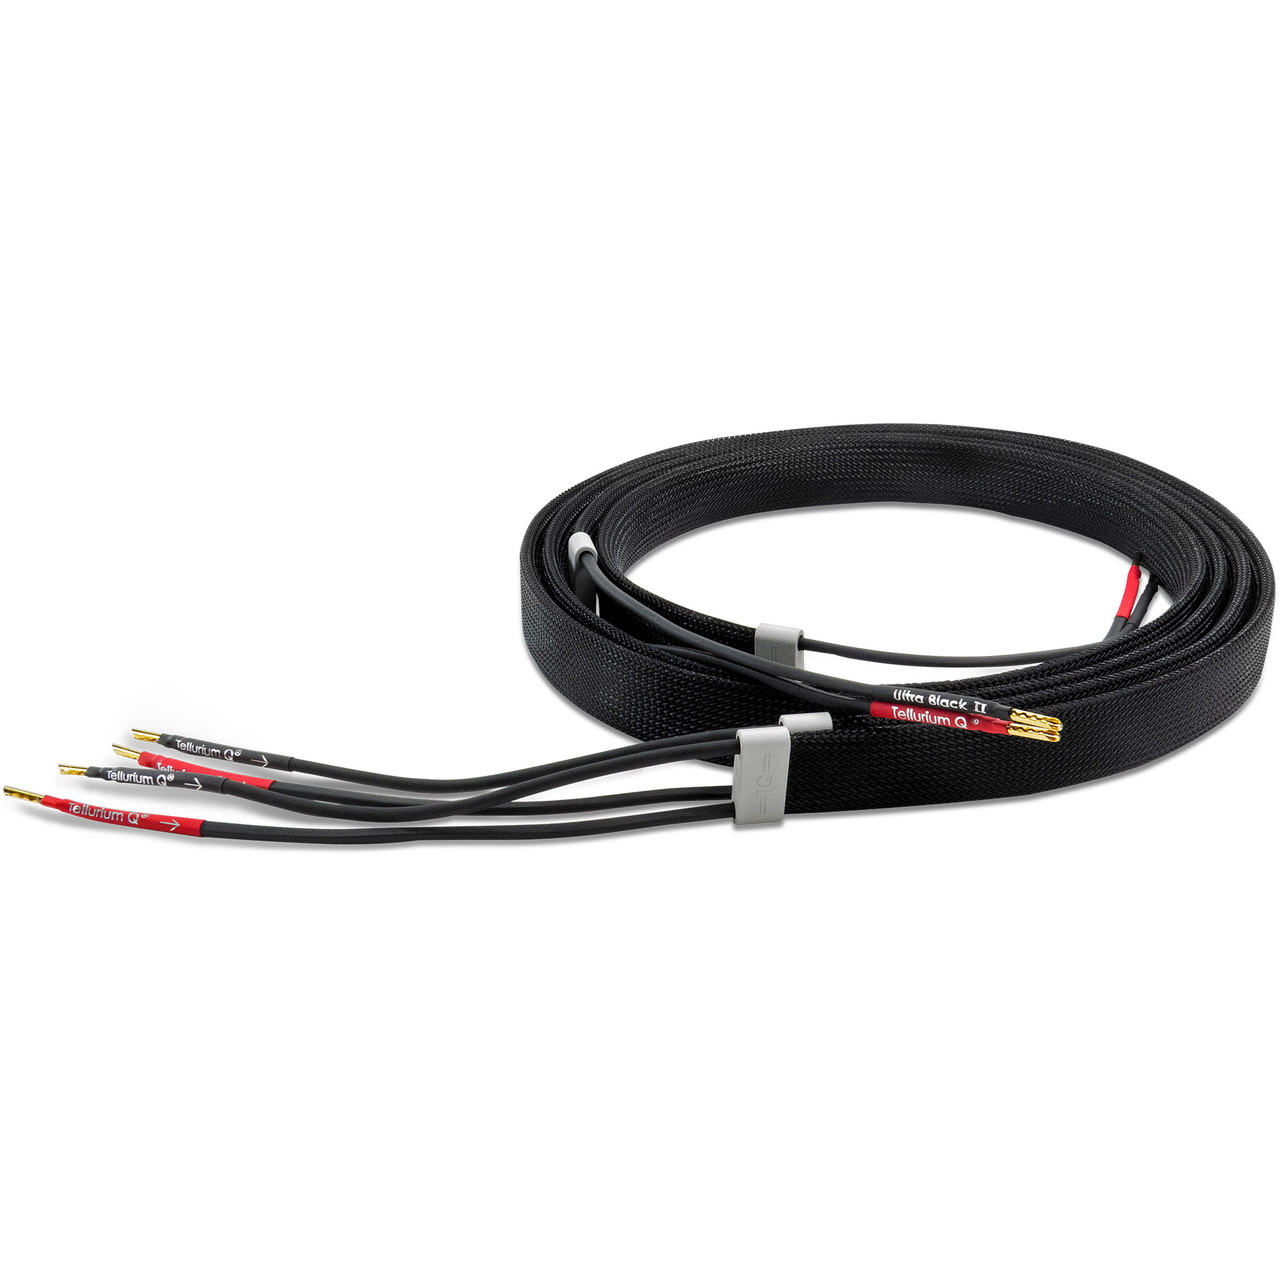 Tellurium Q Ultra Black II speaker cables